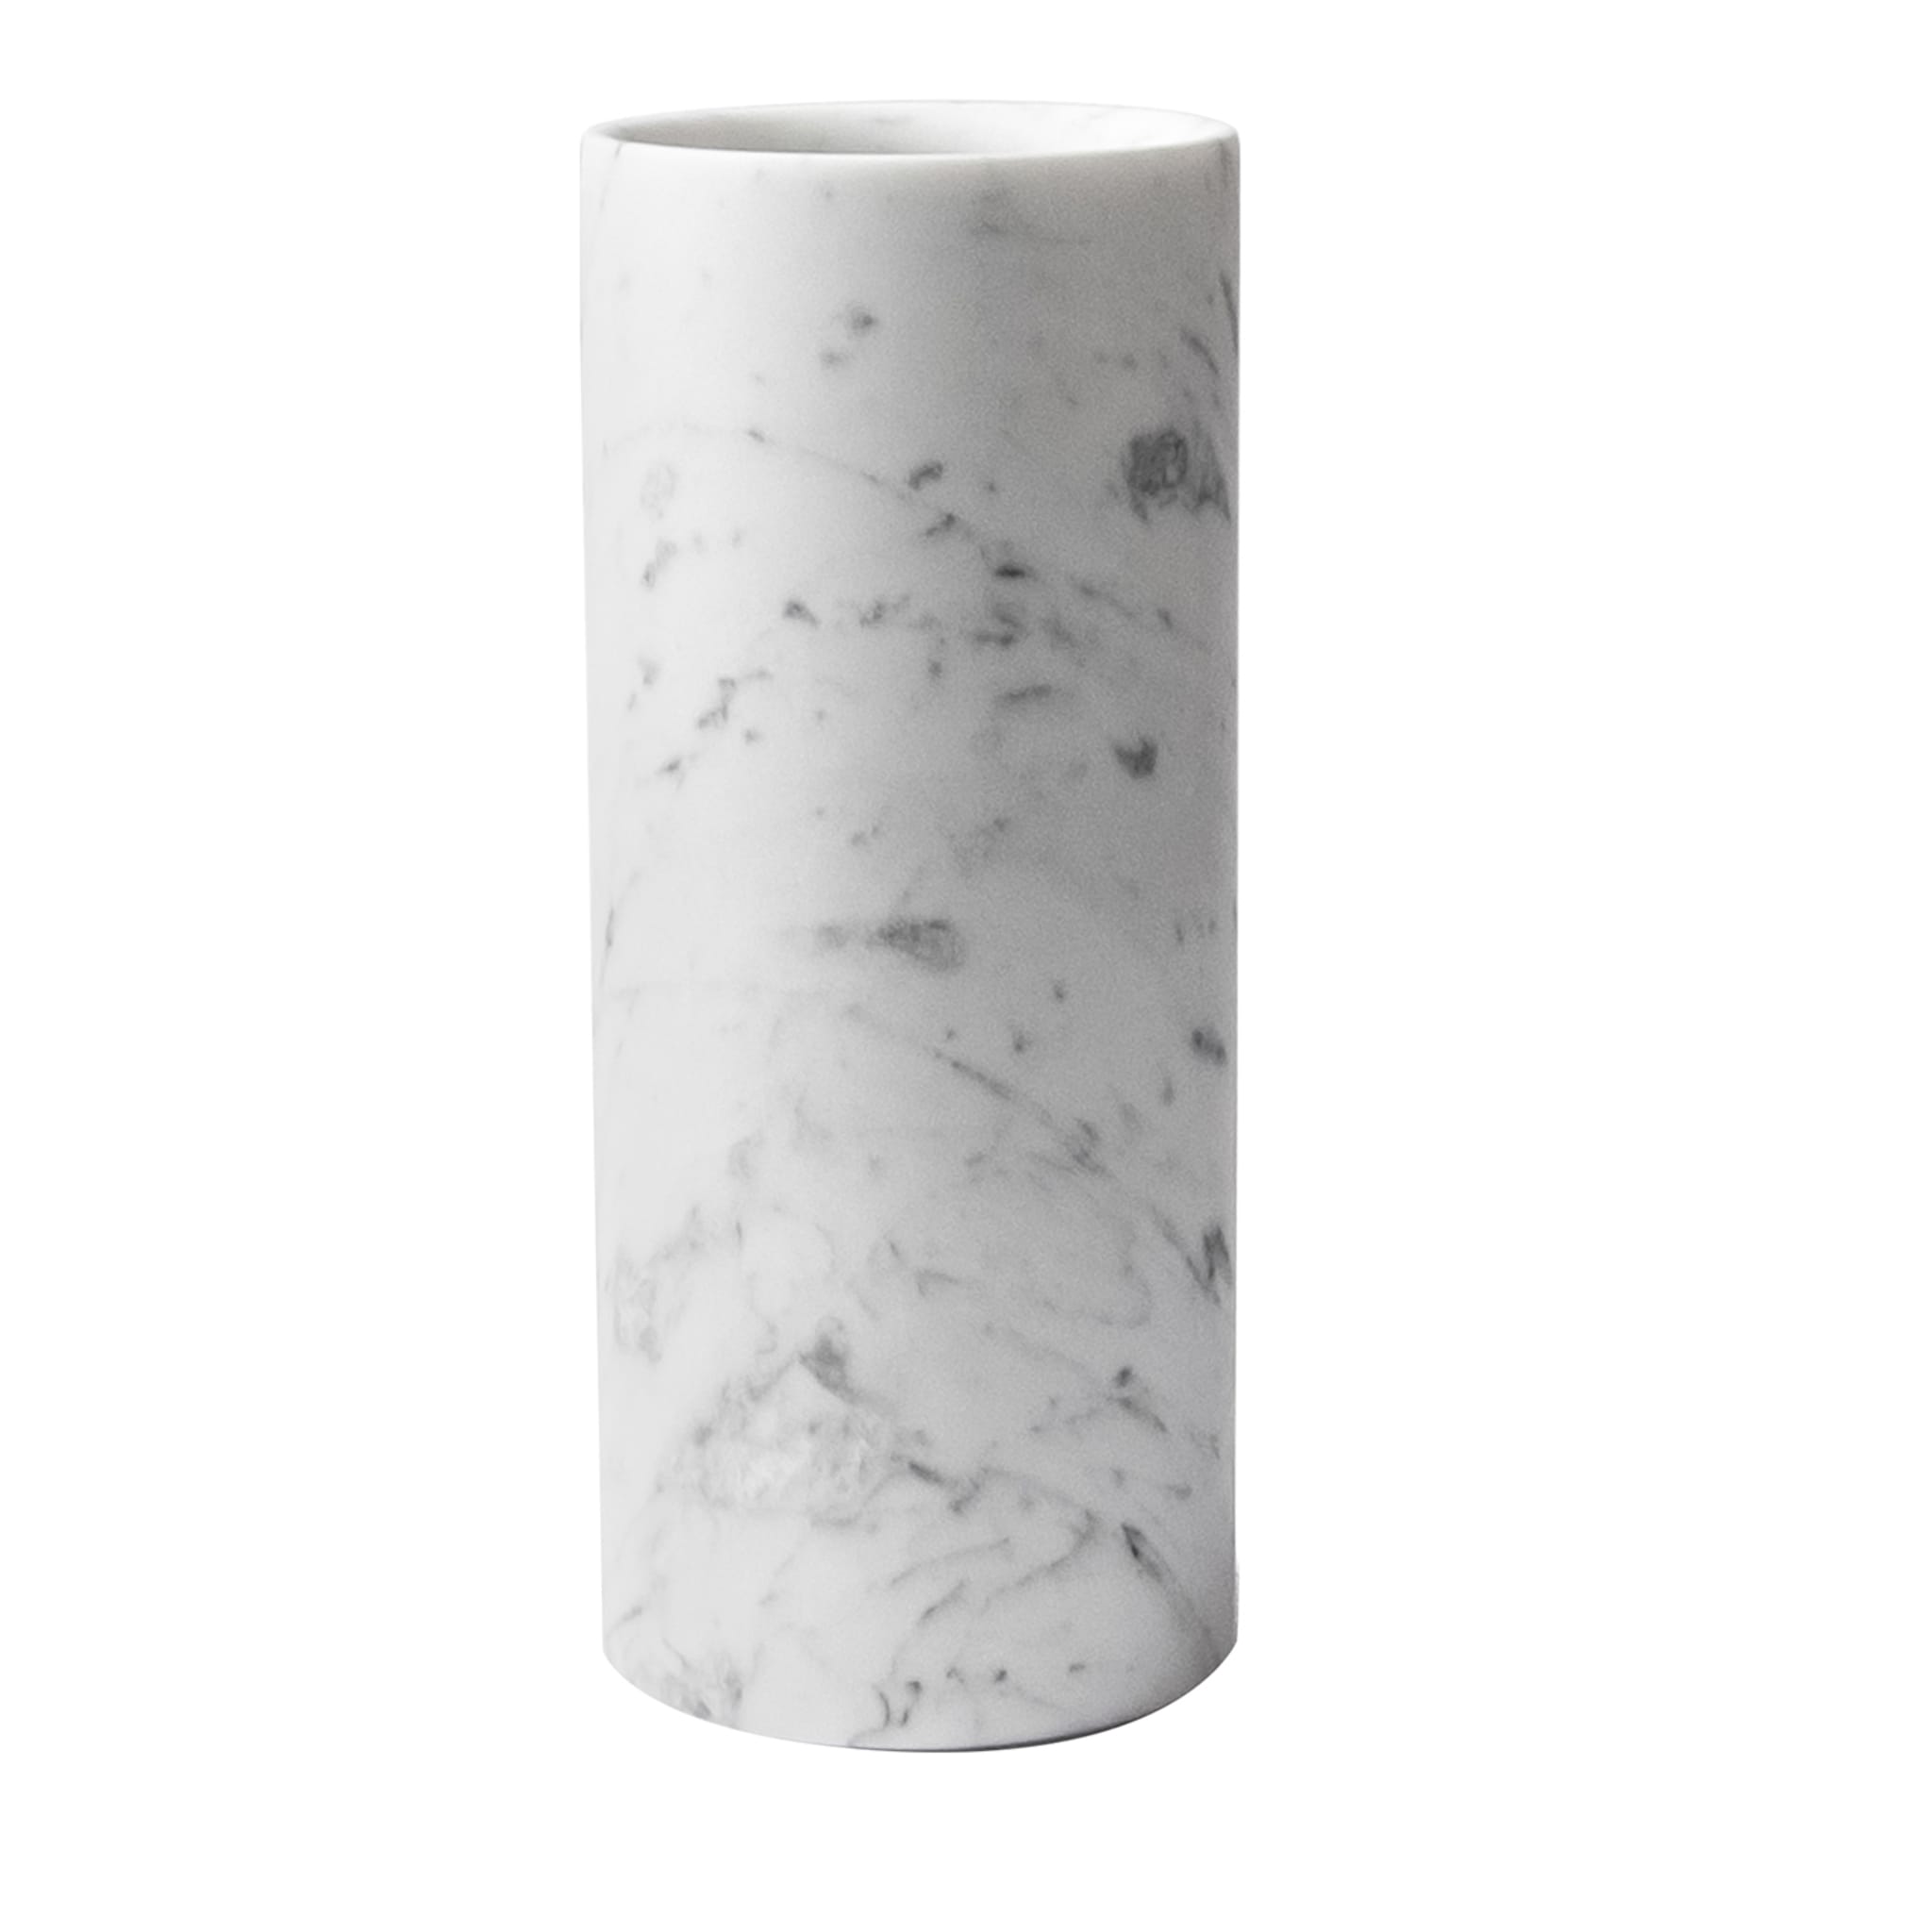 Vaso cilindrico in marmo bianco satinato di Carrara - Vista principale